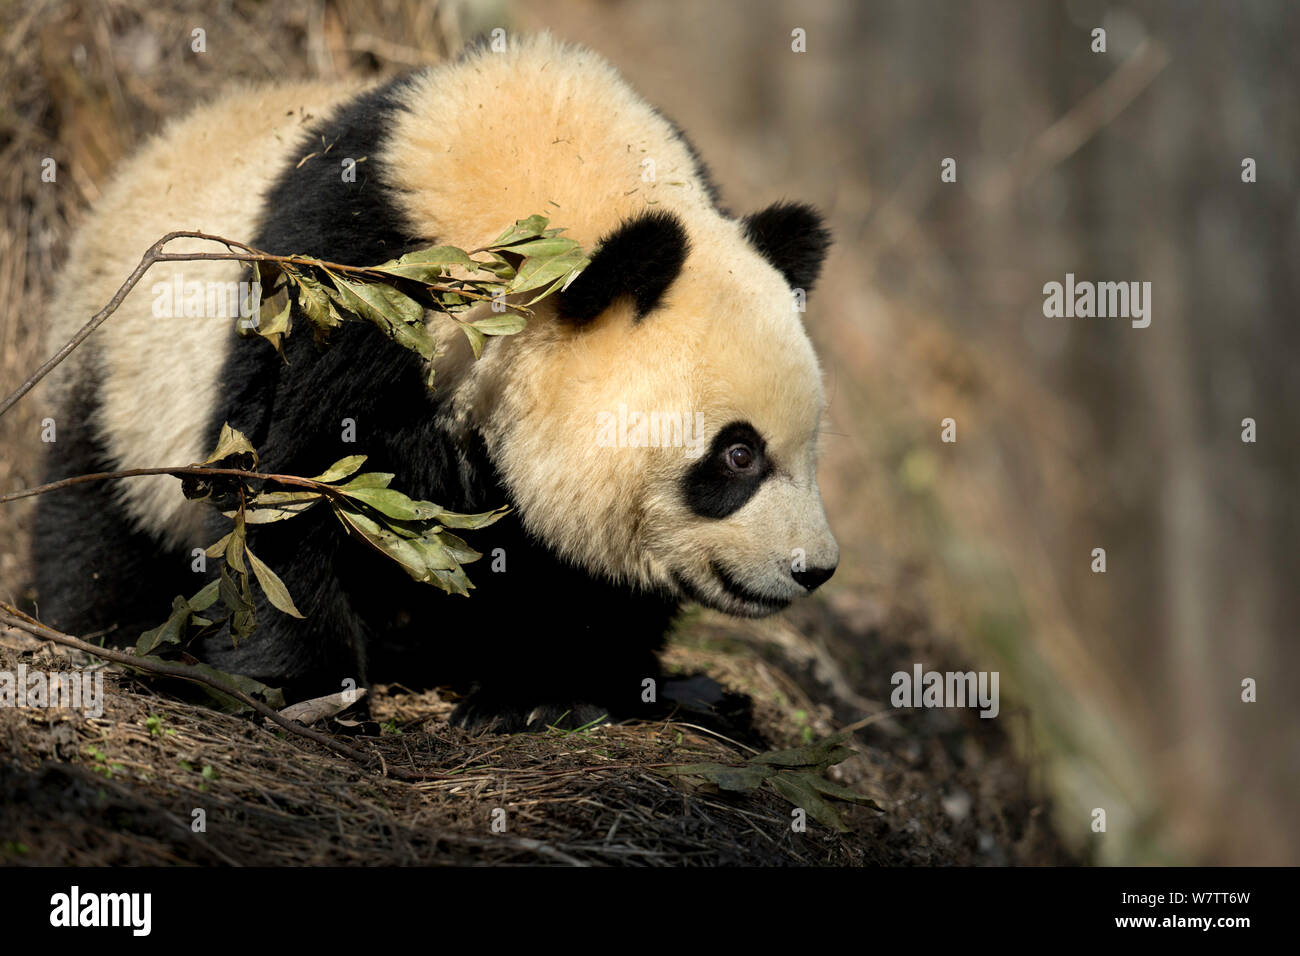 Panda géant (Ailuropoda melanoleuca) sub adulte. Bifengxia, Chine. En captivité. Banque D'Images